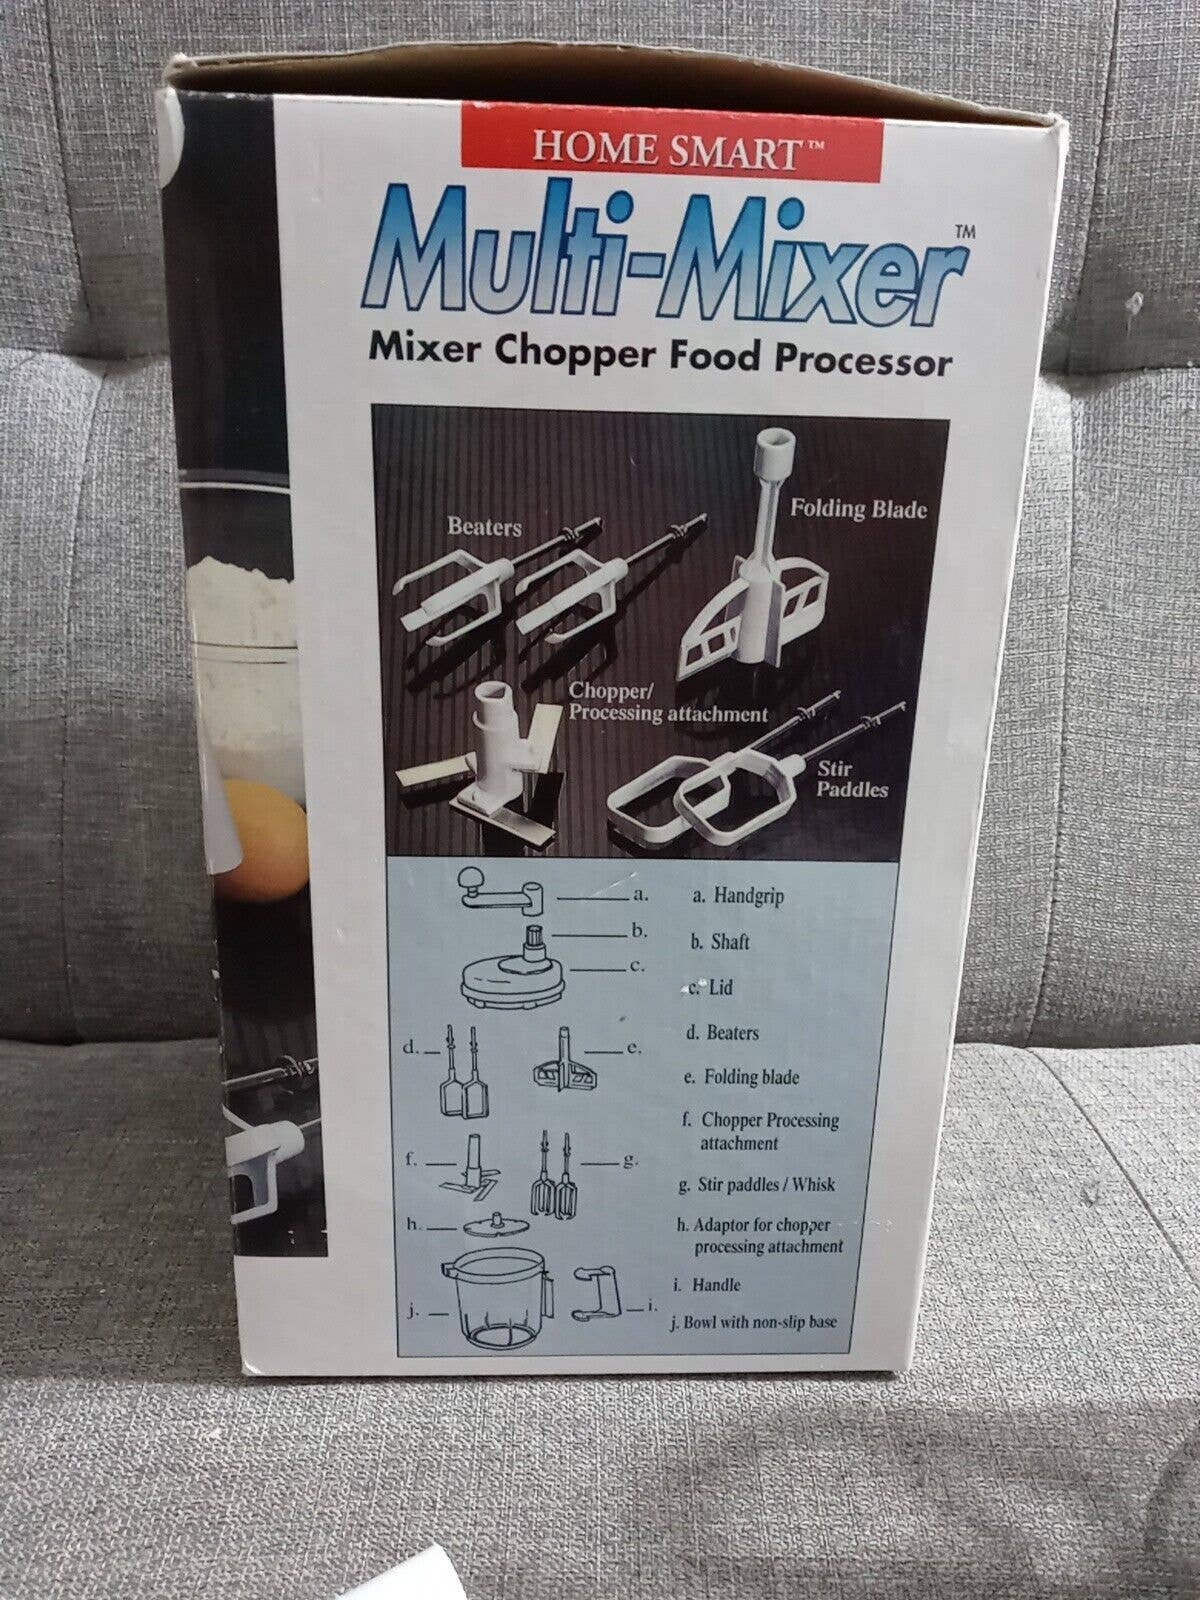 Home Smart Multi-mixer Mixer Chopper Food Processor Open Box